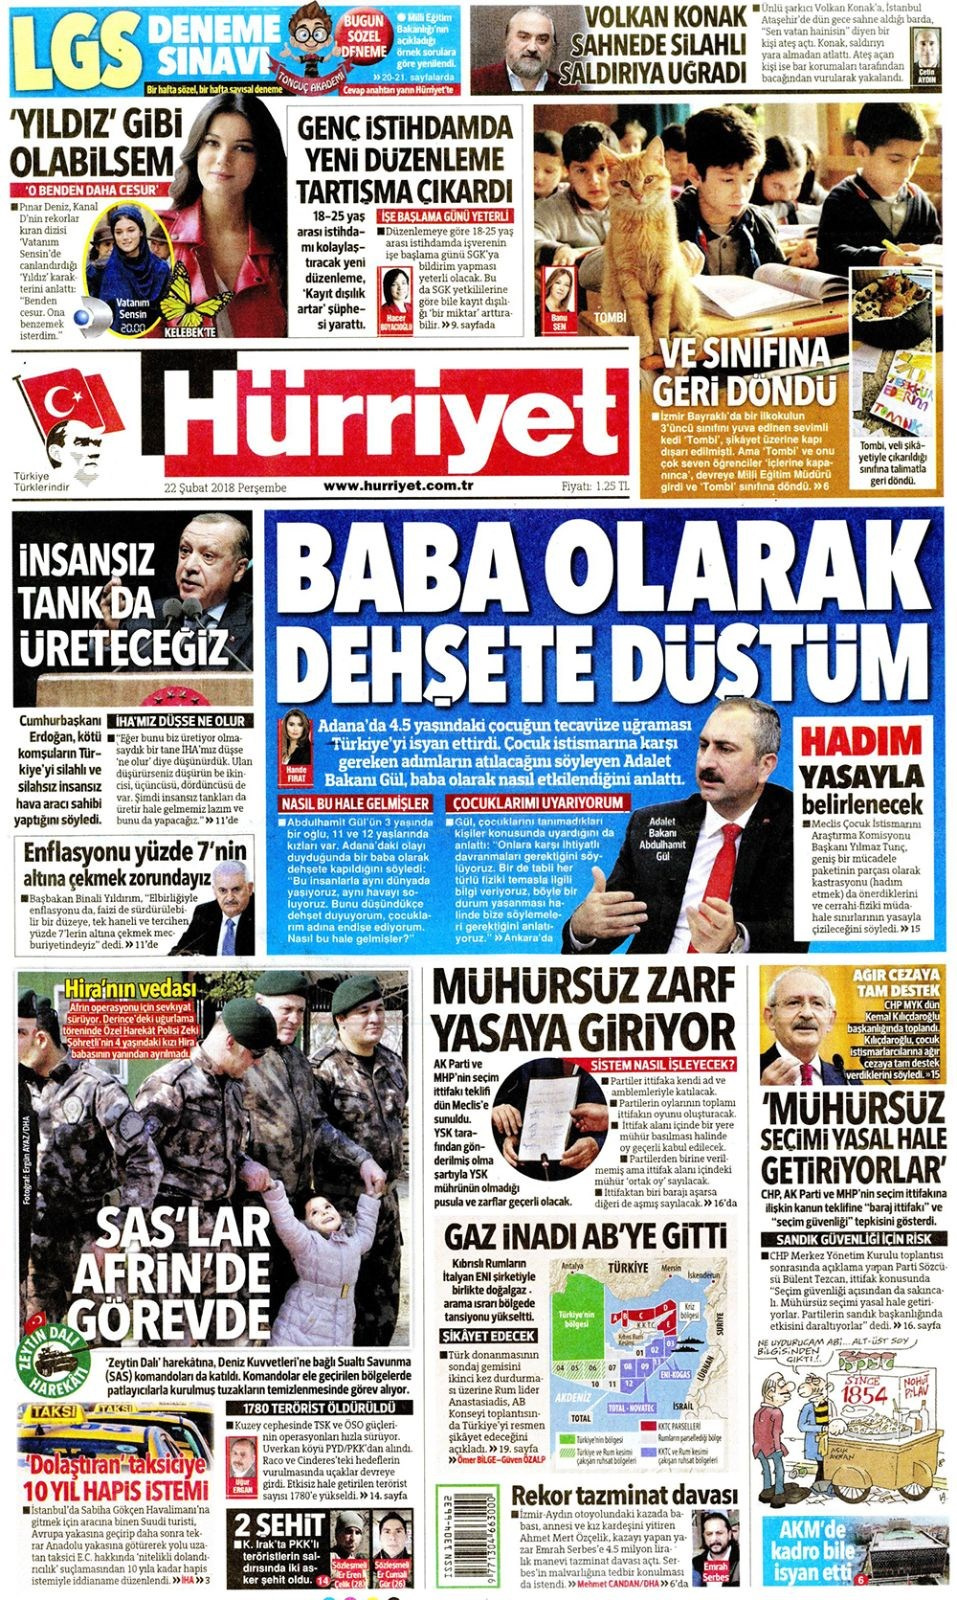 Gazete manşetleri 22 Şubat 2018 Hürriyet - Sözcü - Milliyet